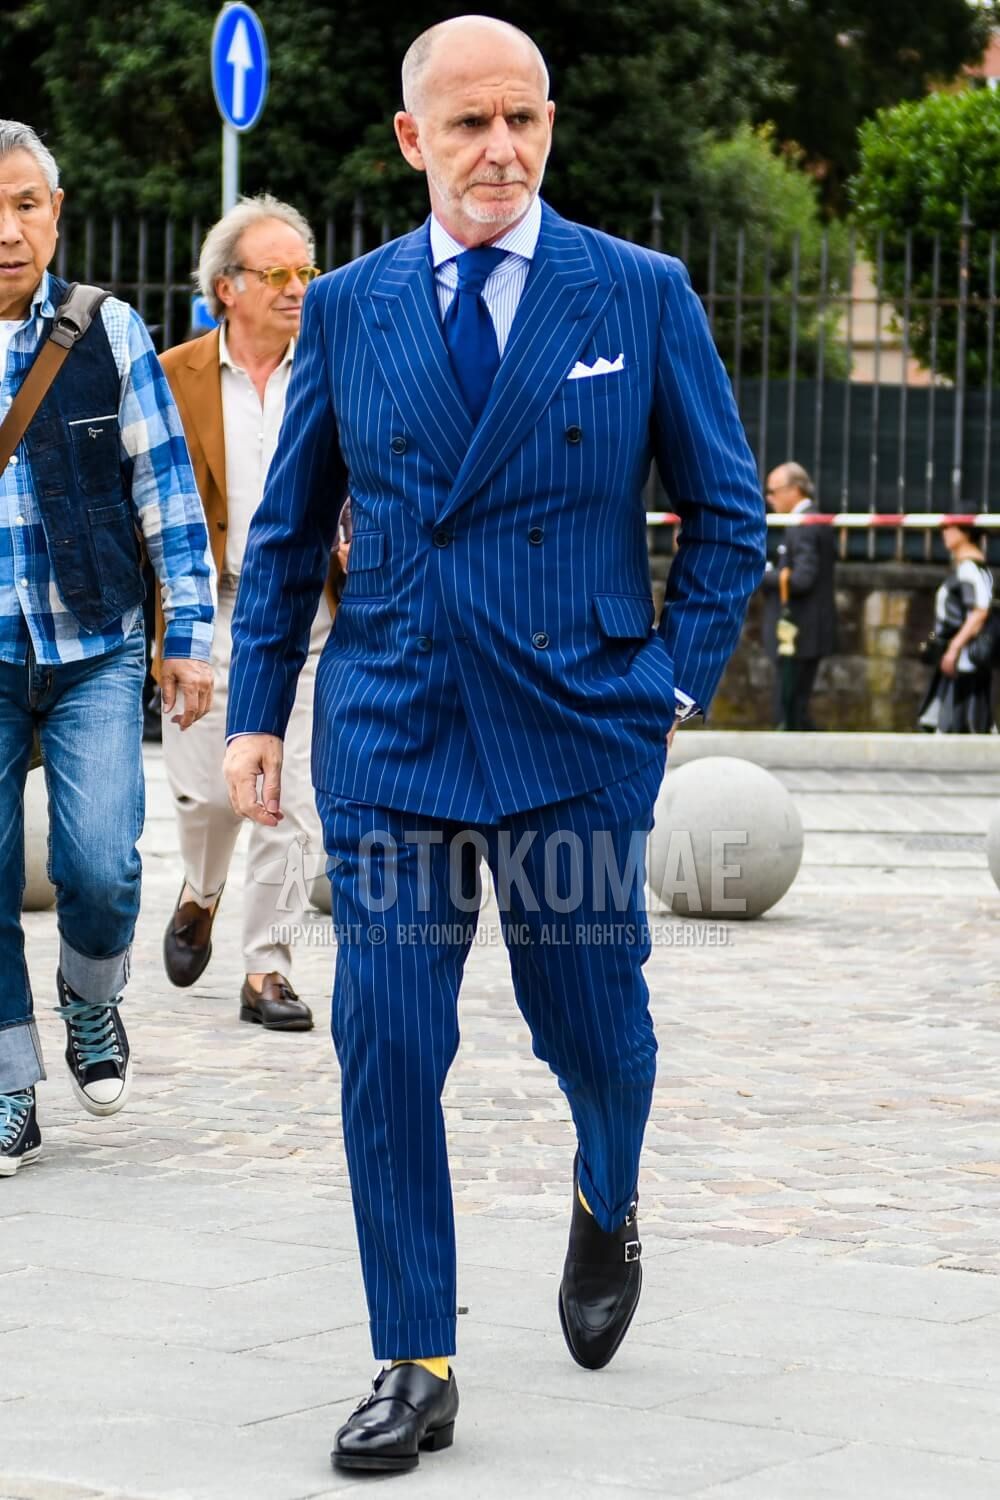 【vintage】セットアップ ダブルスーツ ブルー ジュンスタイル ピンズ肩幅48